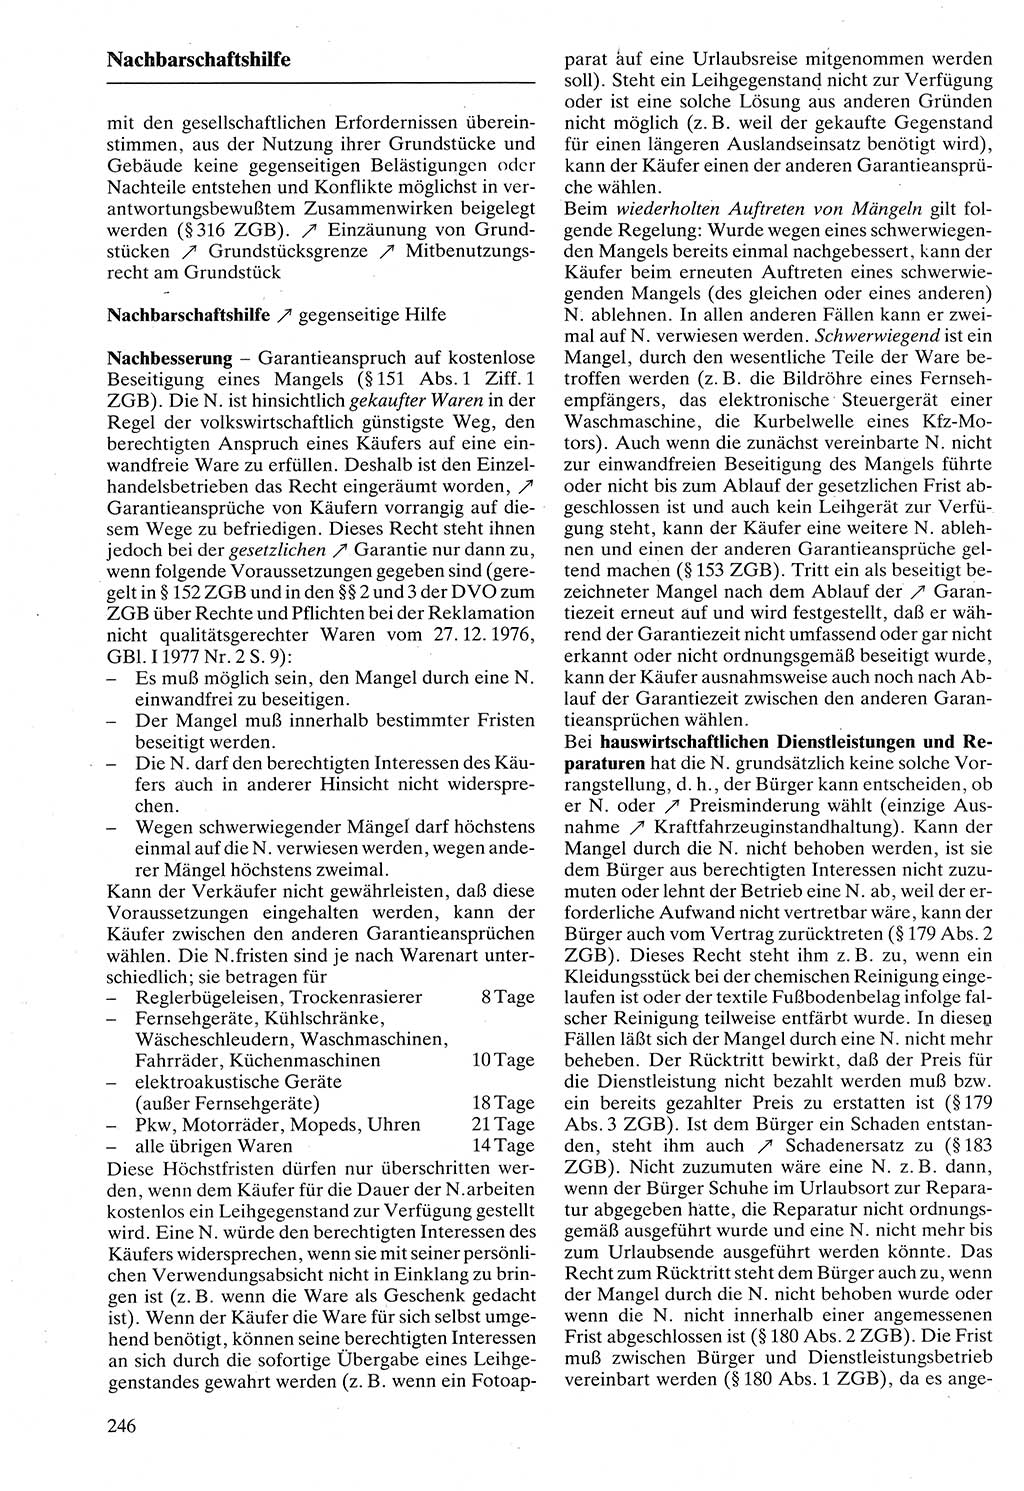 Rechtslexikon [Deutsche Demokratische Republik (DDR)] 1988, Seite 246 (Rechtslex. DDR 1988, S. 246)